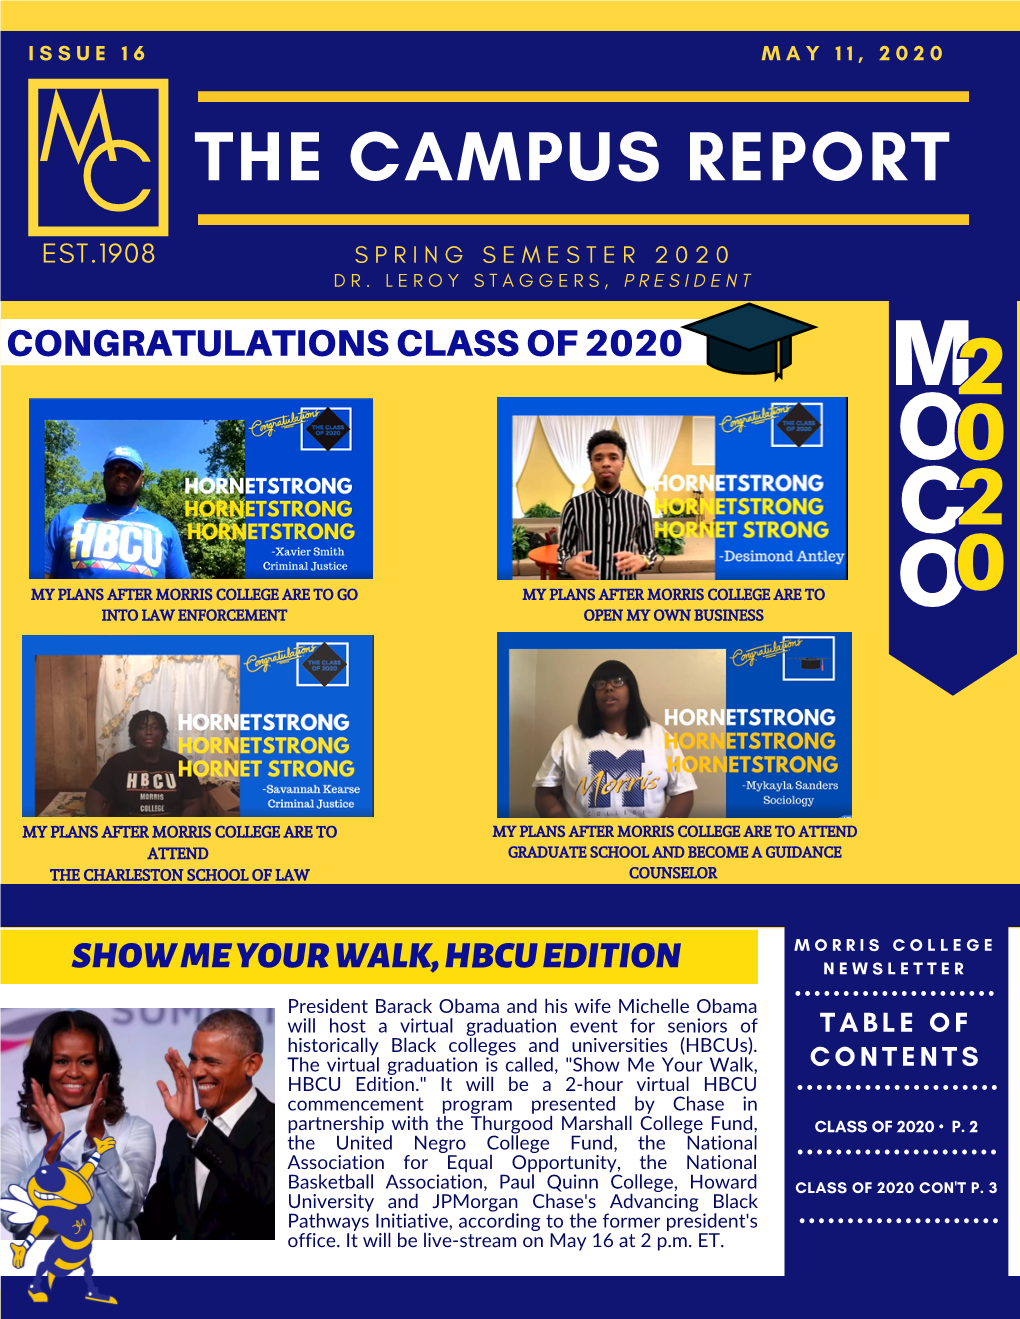 The Campus Report